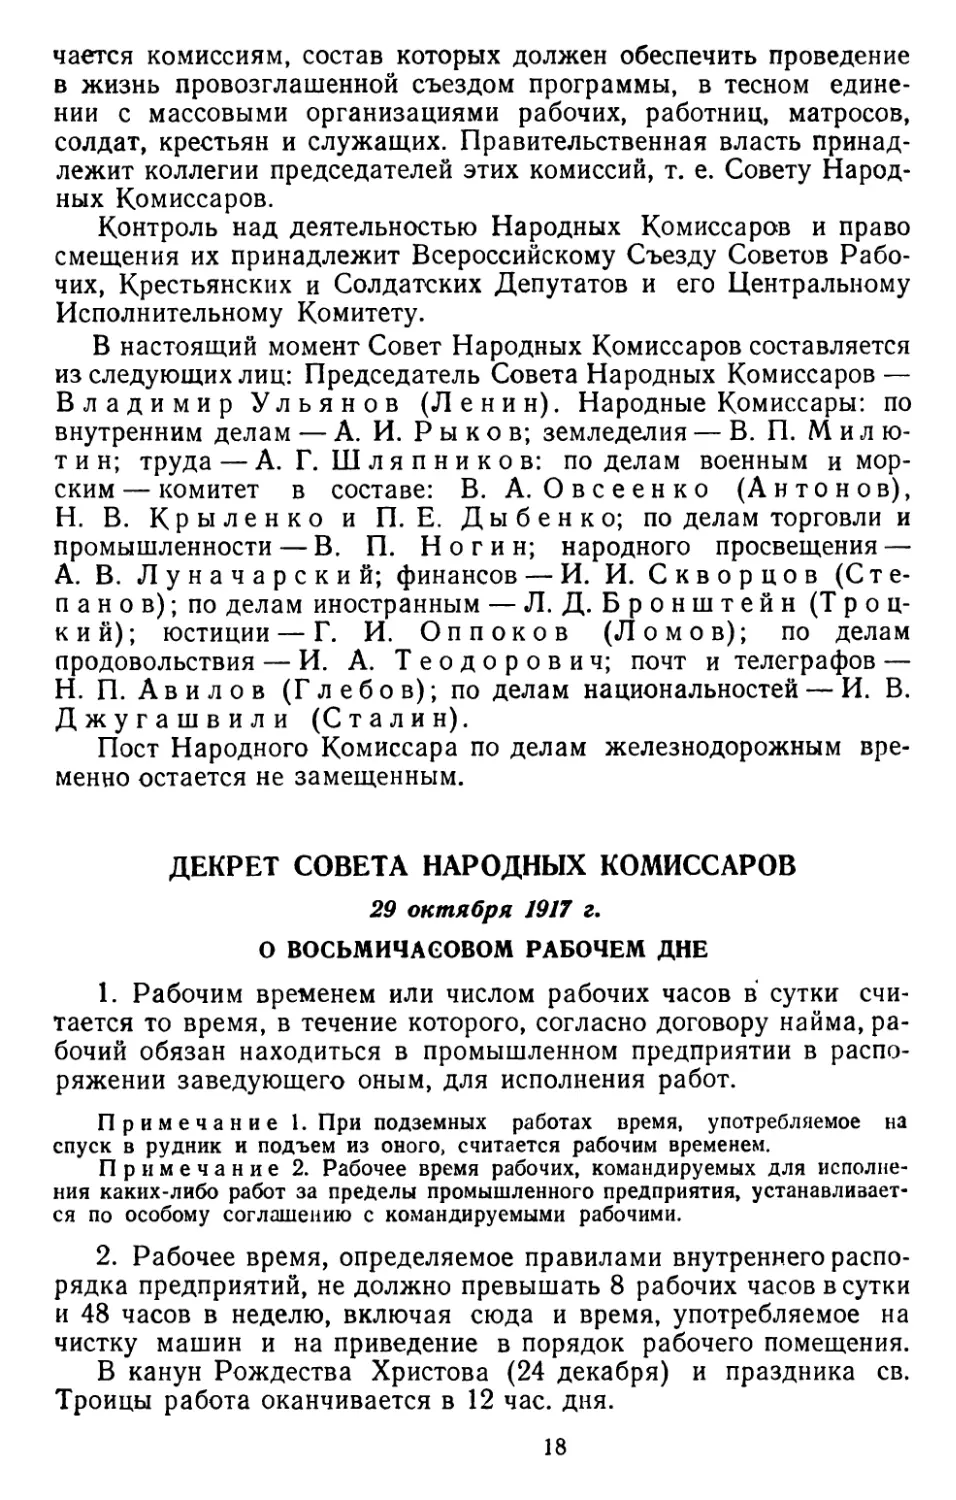 Декрет Совета Народных Комиссаров, 29 октября 1917 г. О восьмичасовом рабочем дне